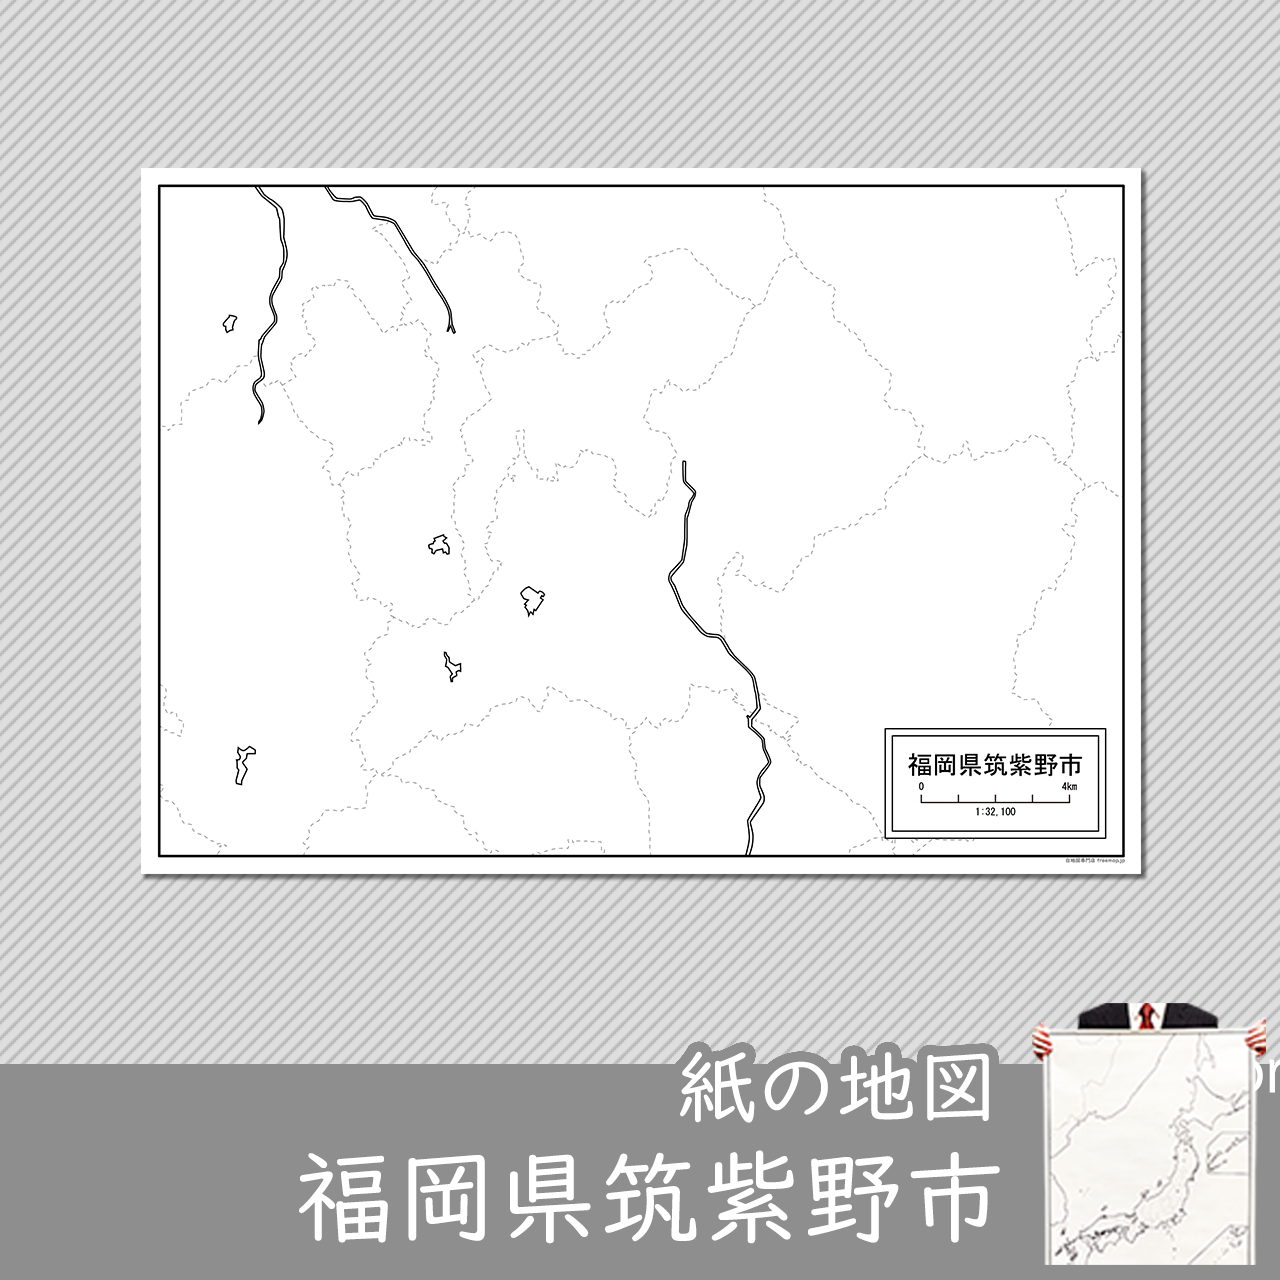 筑紫野市の紙の白地図のサムネイル